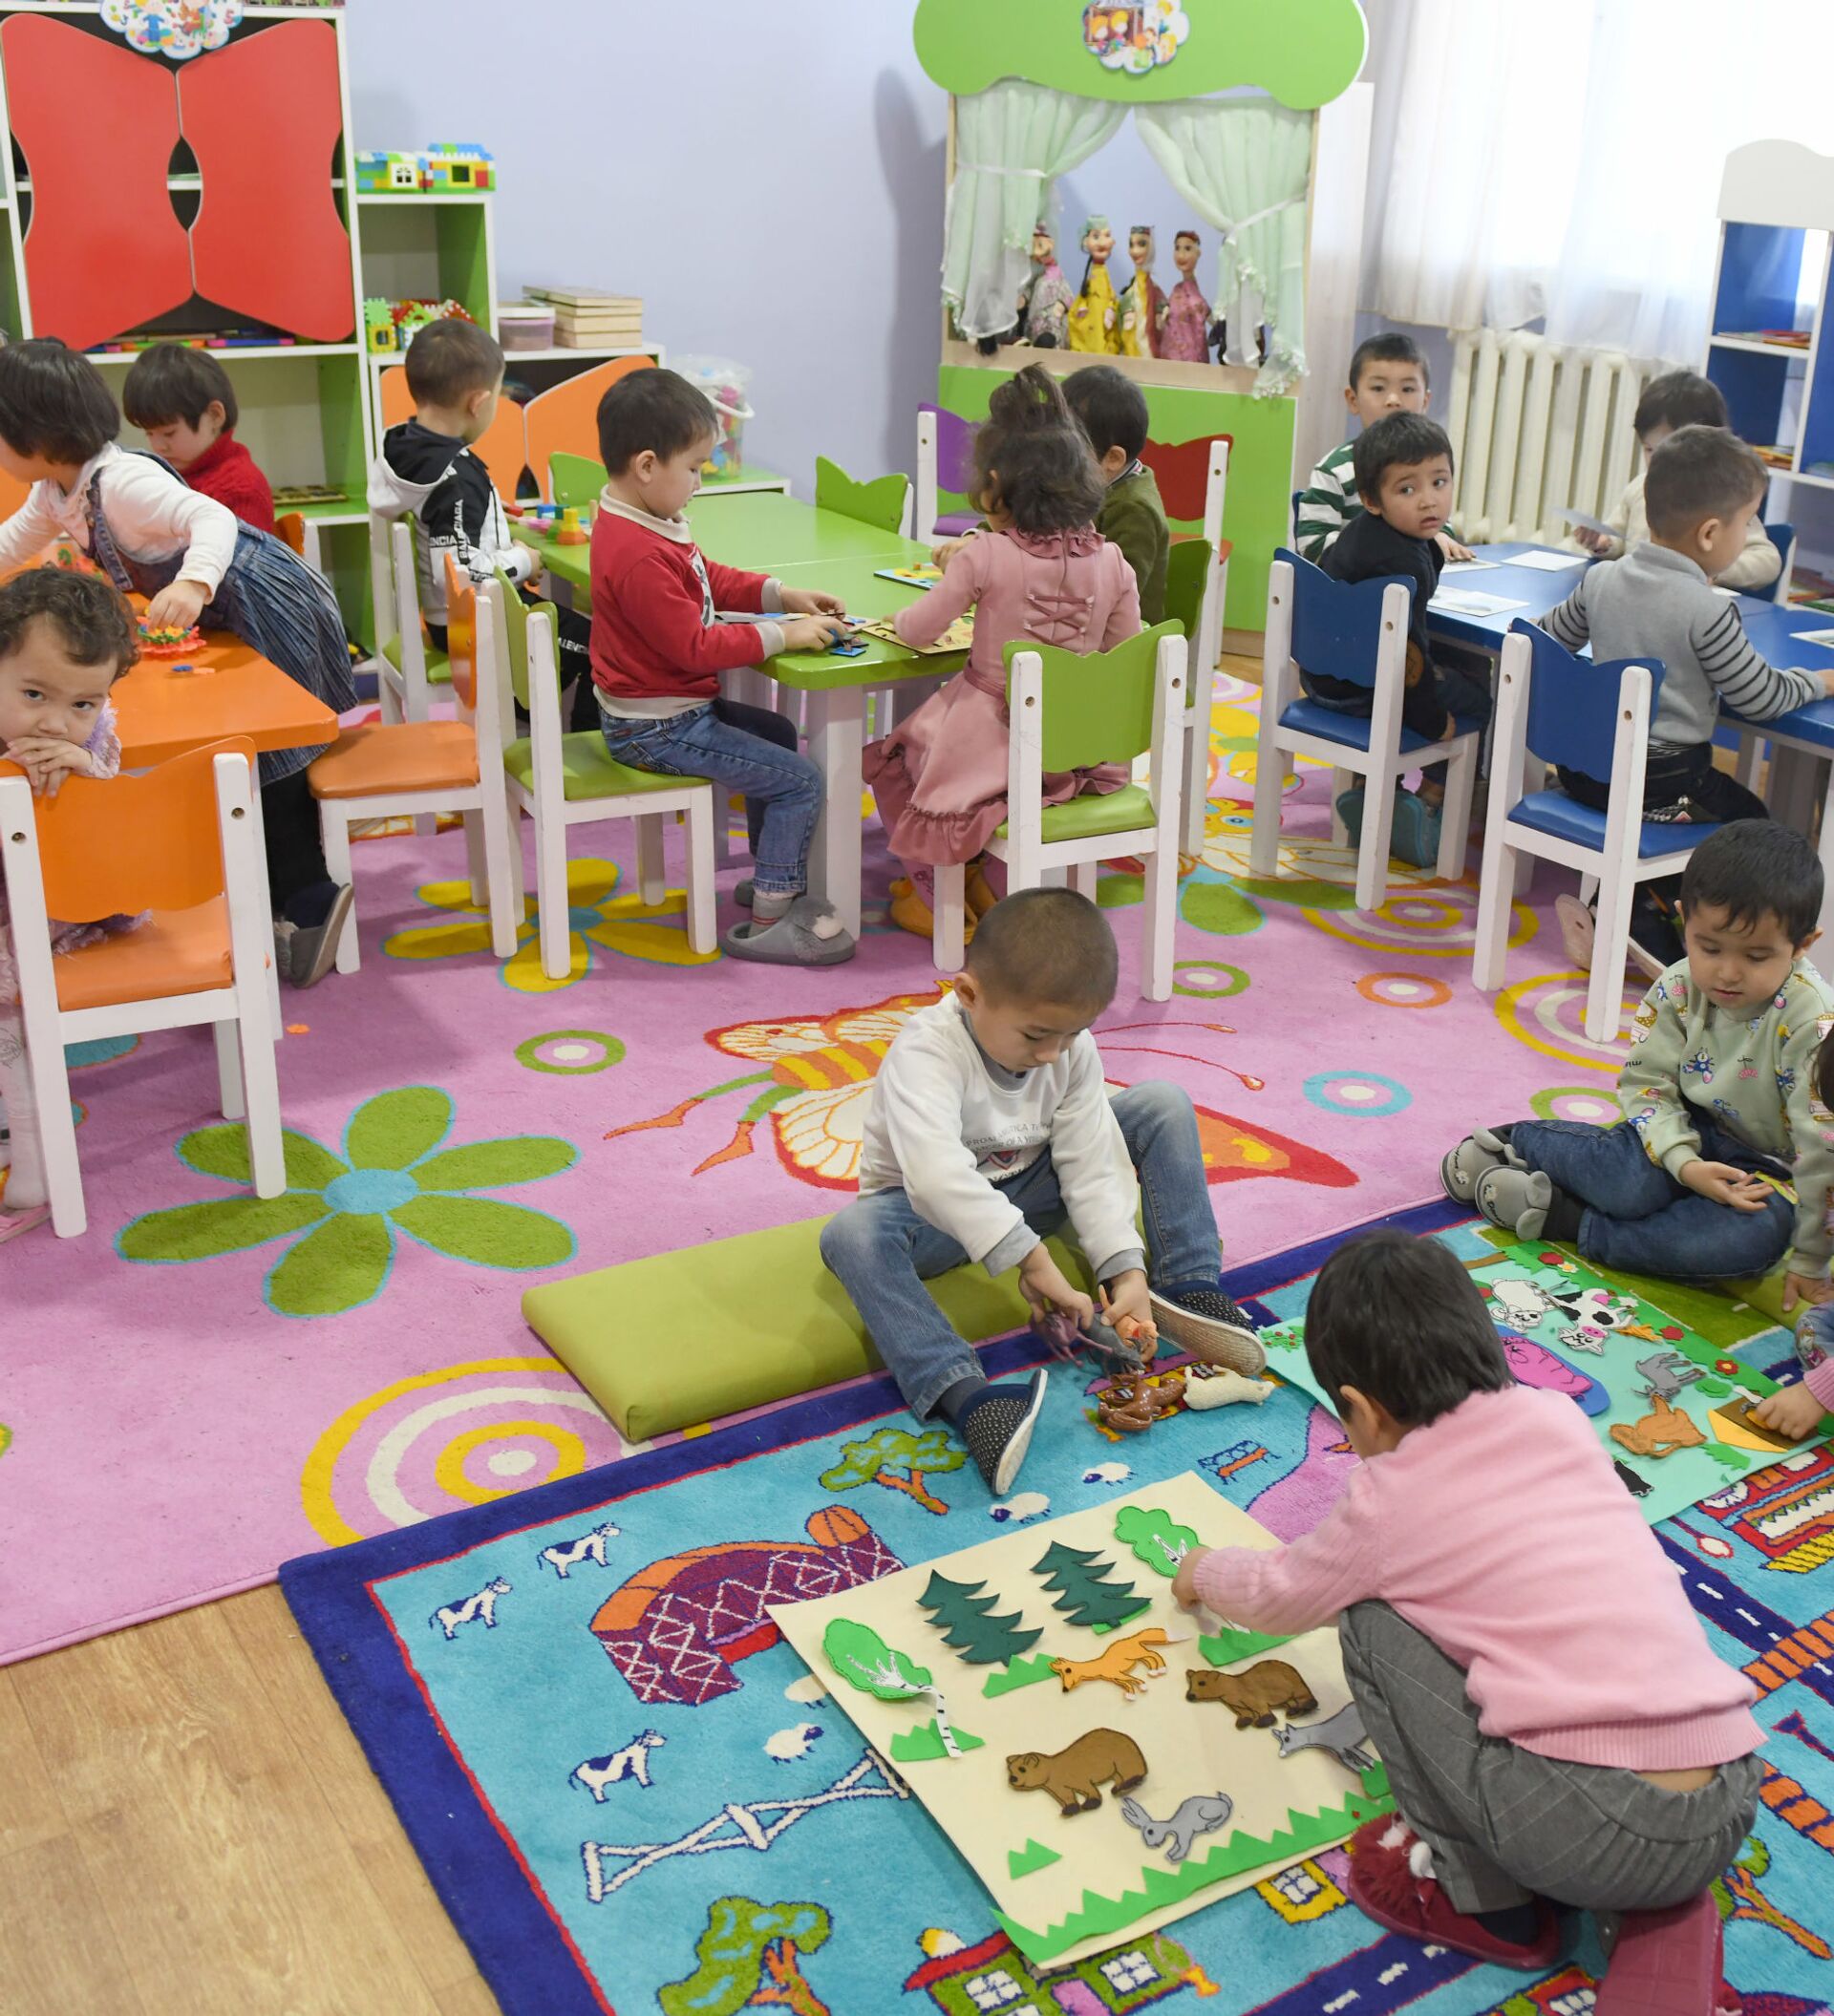 V detskom sadu. Детский садик в Узбекистане. Домашние детские сады в Узбекистане. Дети в саду Узбекистан. Работа в детском саду.